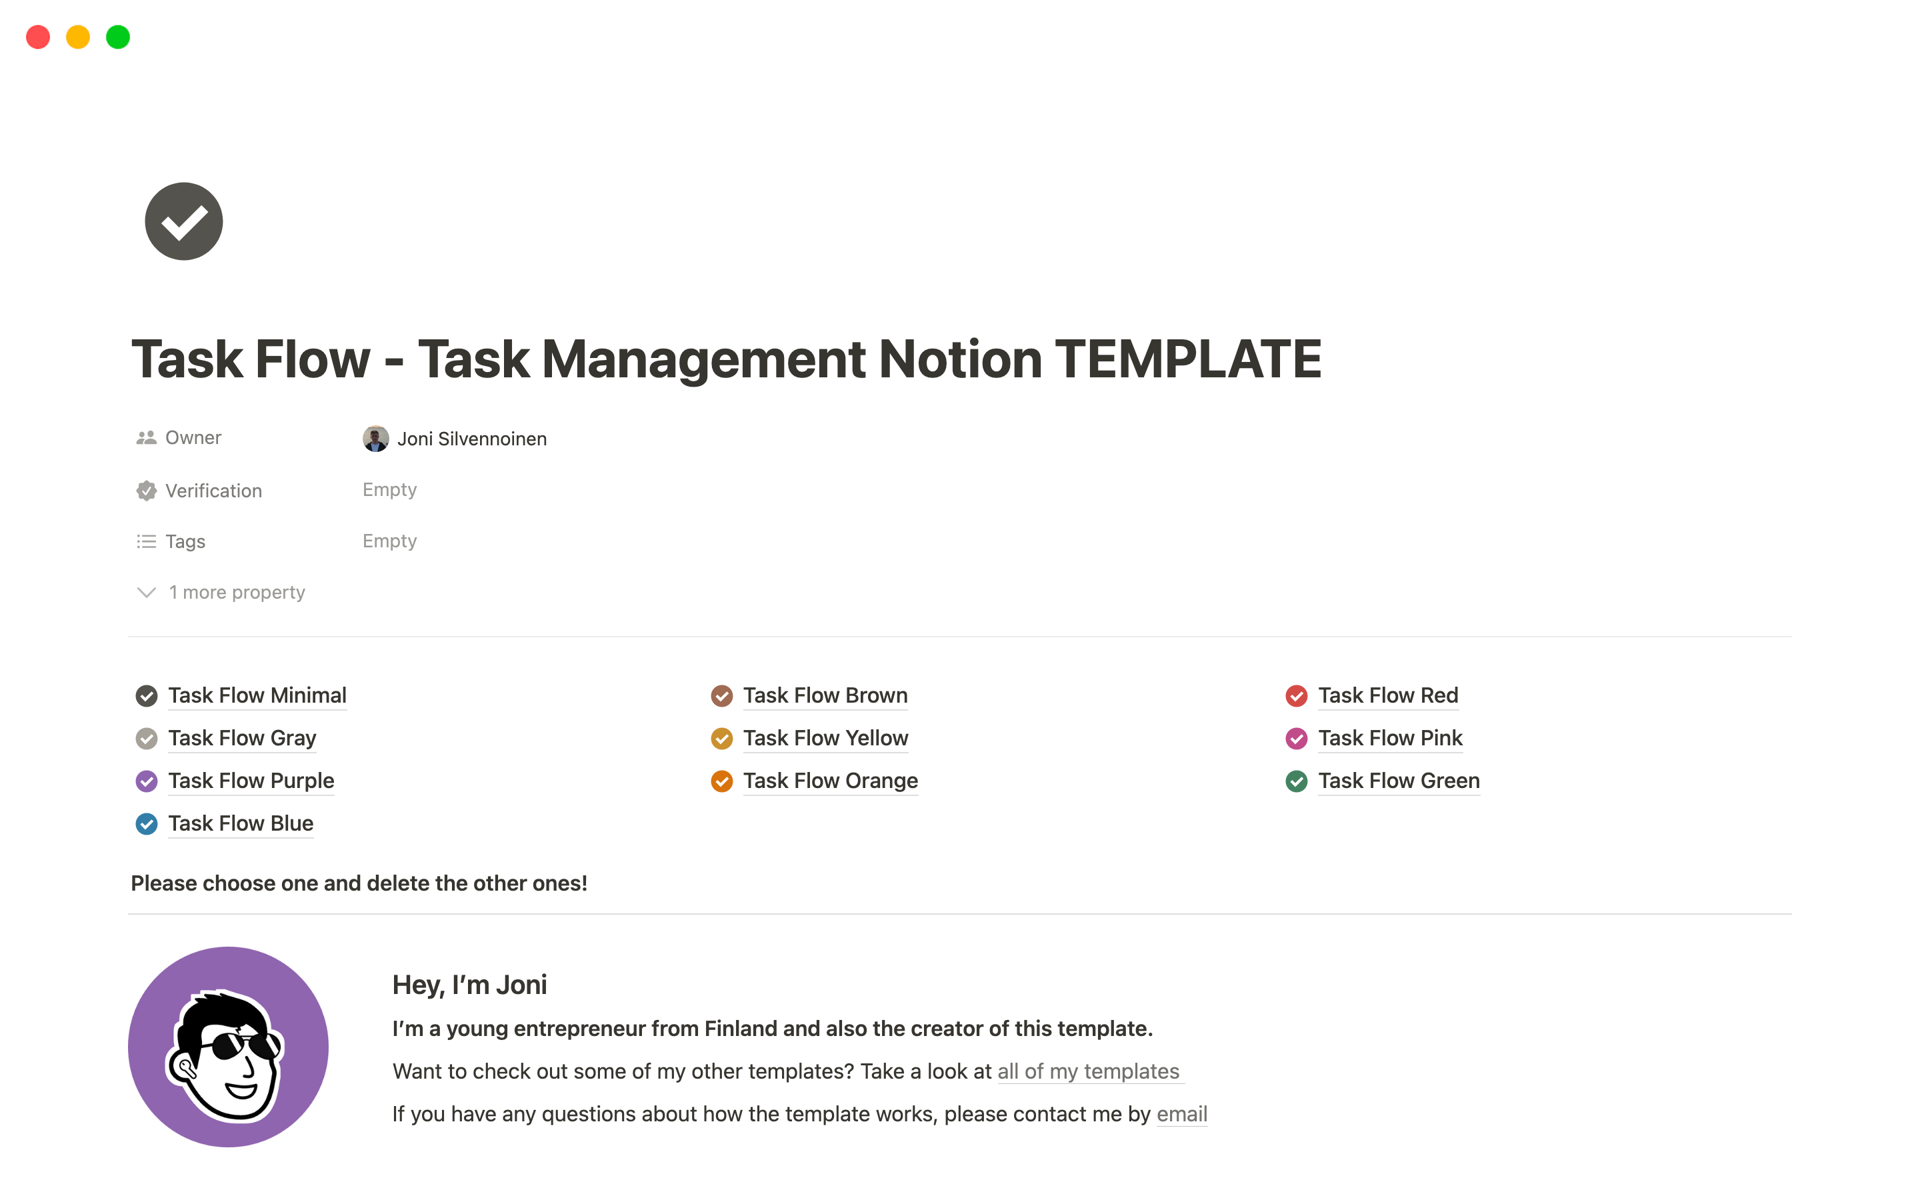 Uma prévia do modelo para Task Flow - Task Management Notion Template